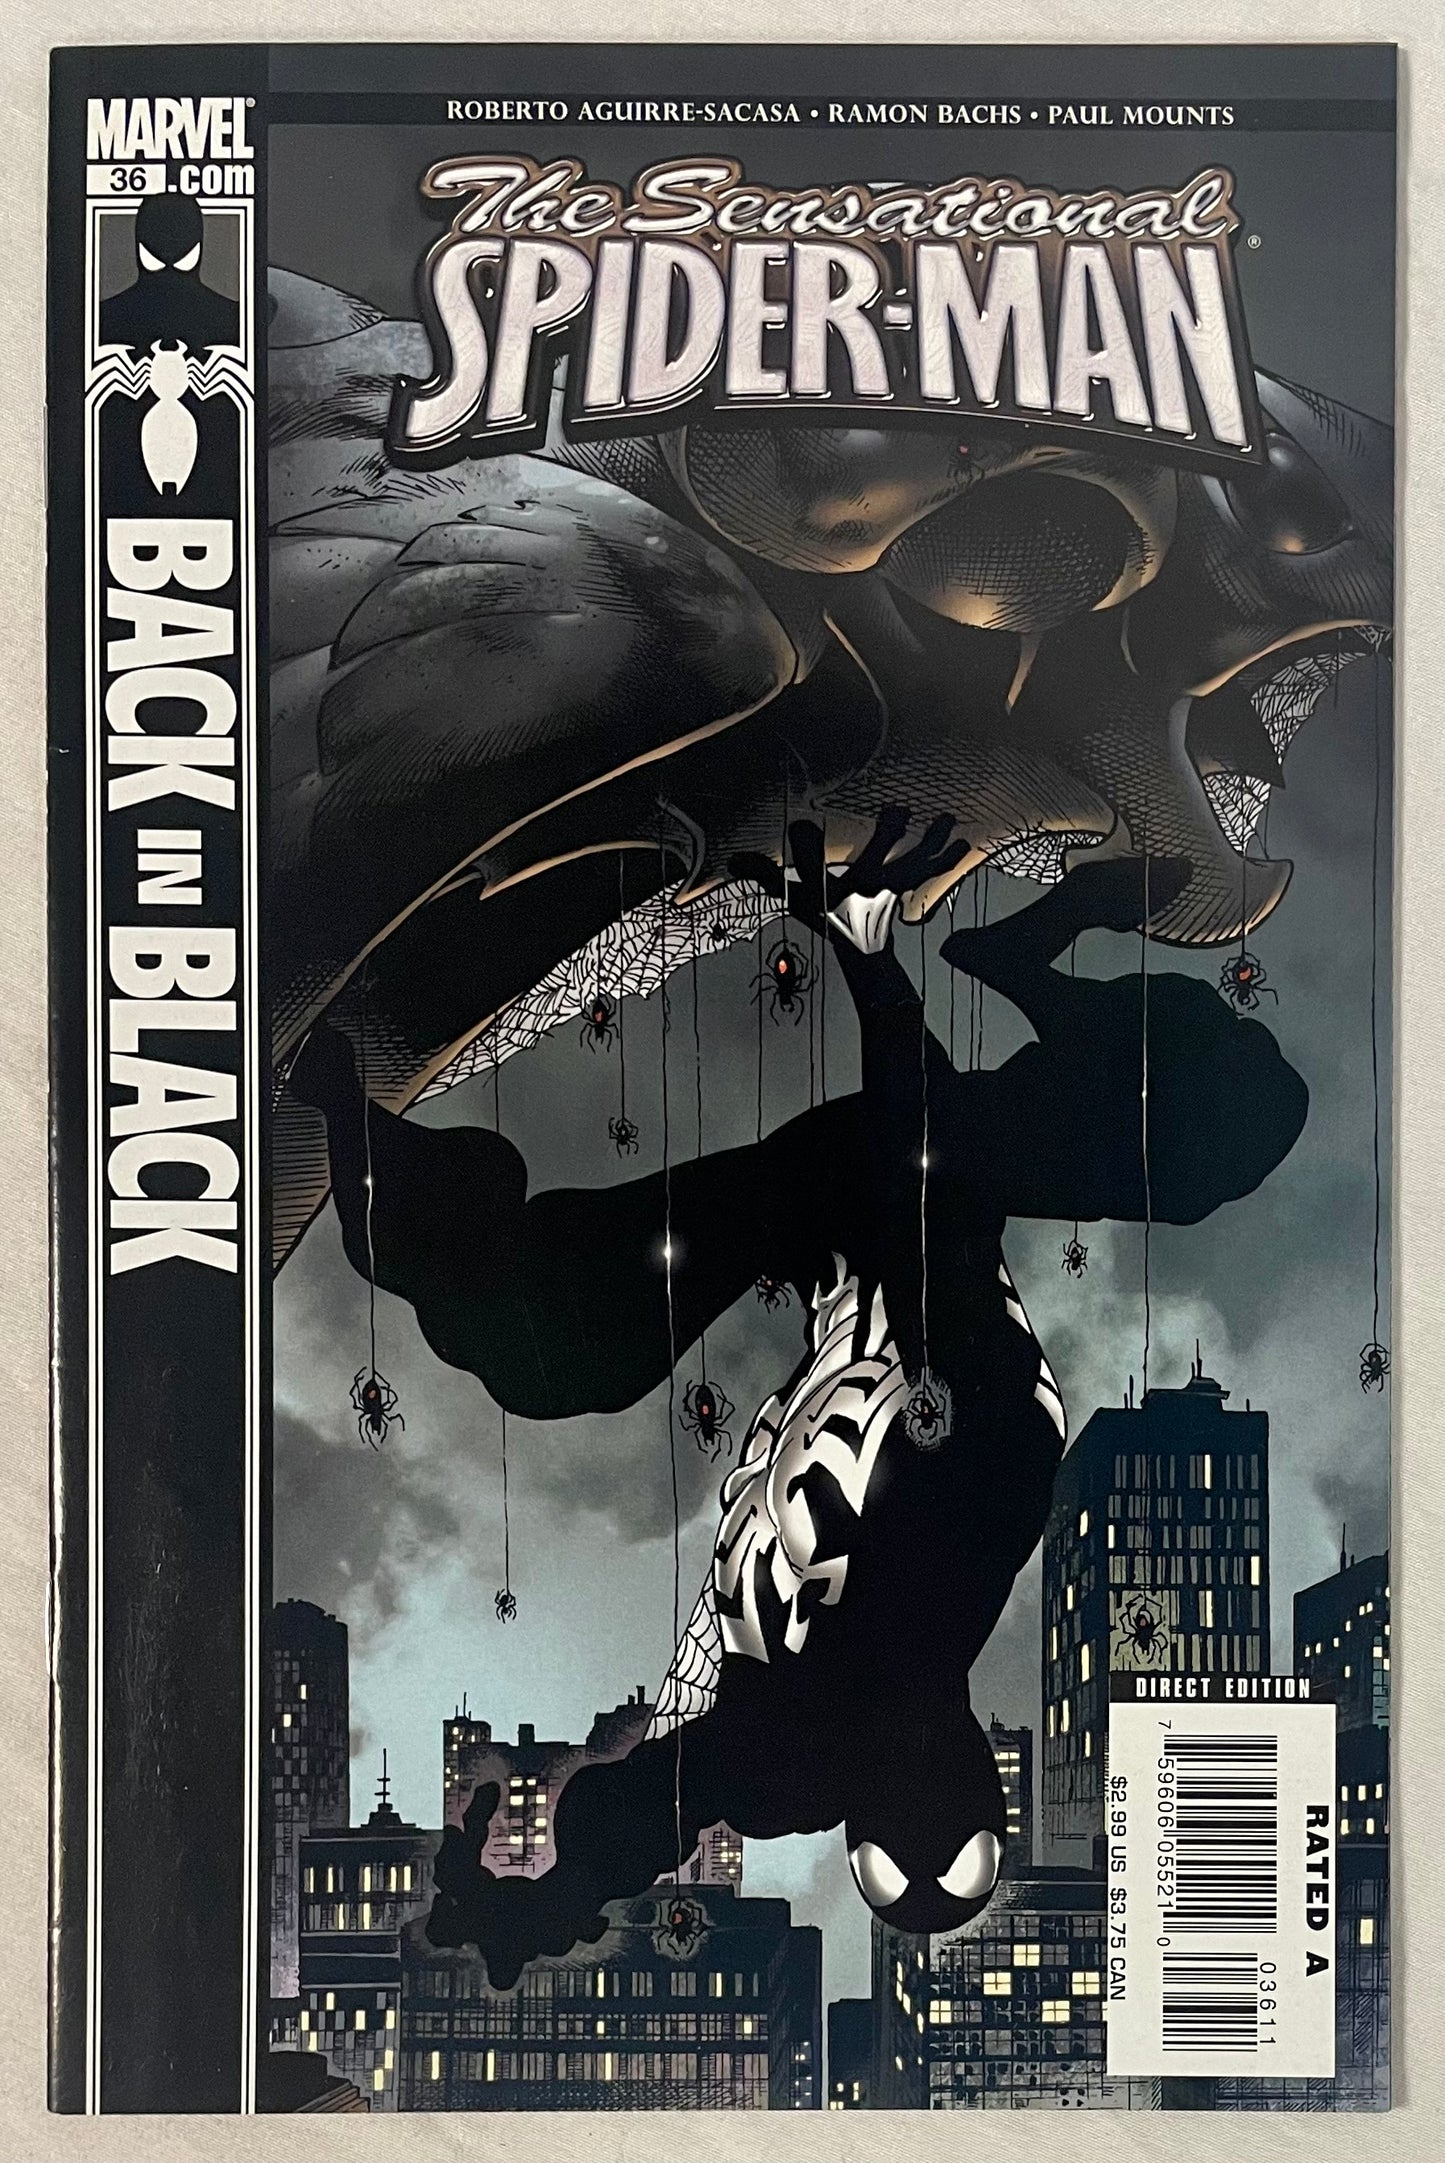 Marvel Comics The Sensational Spider-Man Back in Black #36